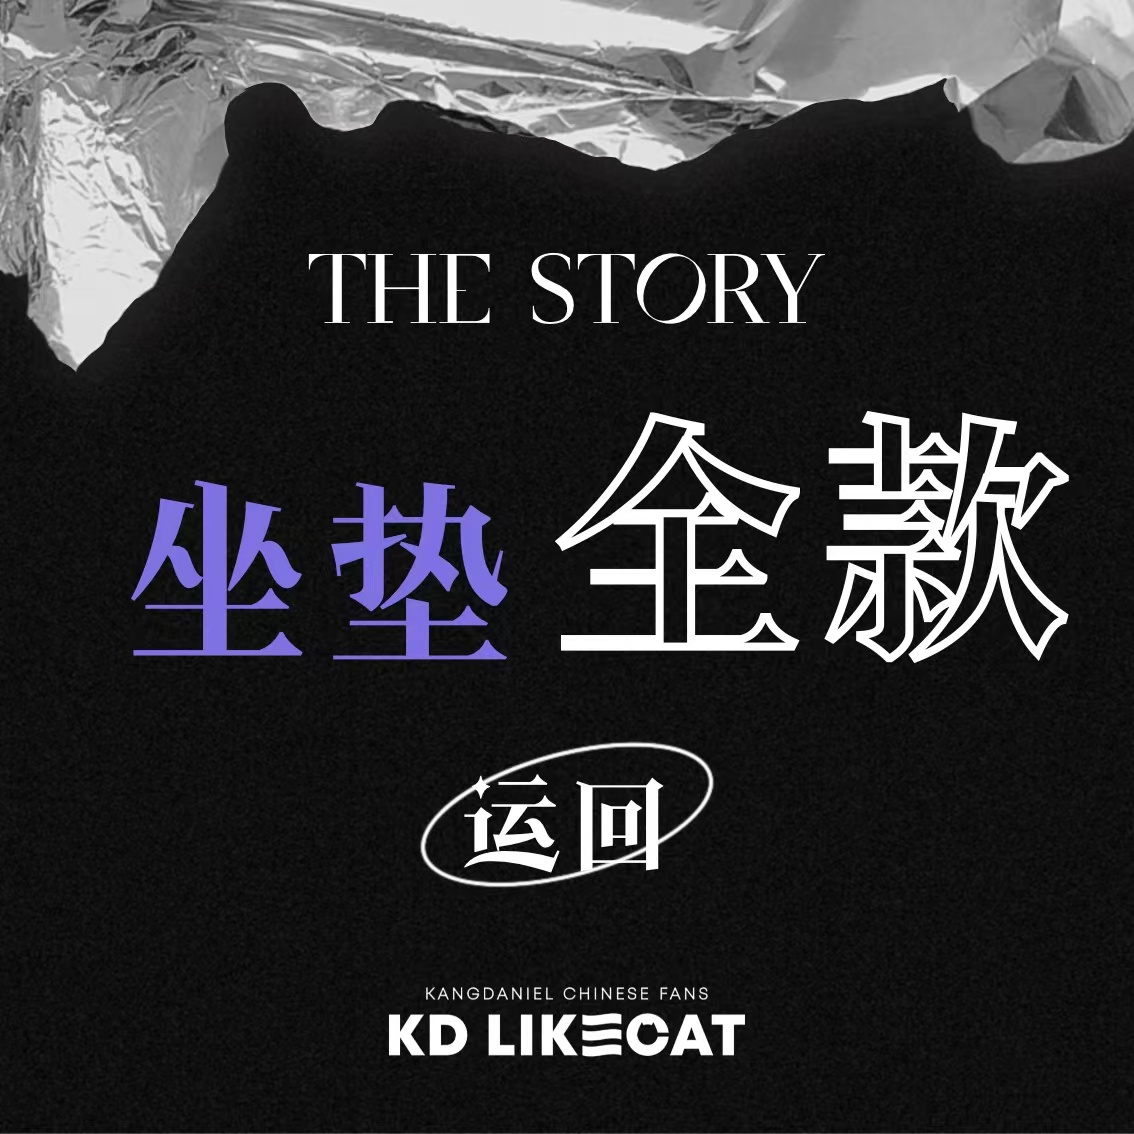 [全款 坐垫运回] KANG DANIEL - 1st Full Album [The Story] _姜丹尼尔_likecat